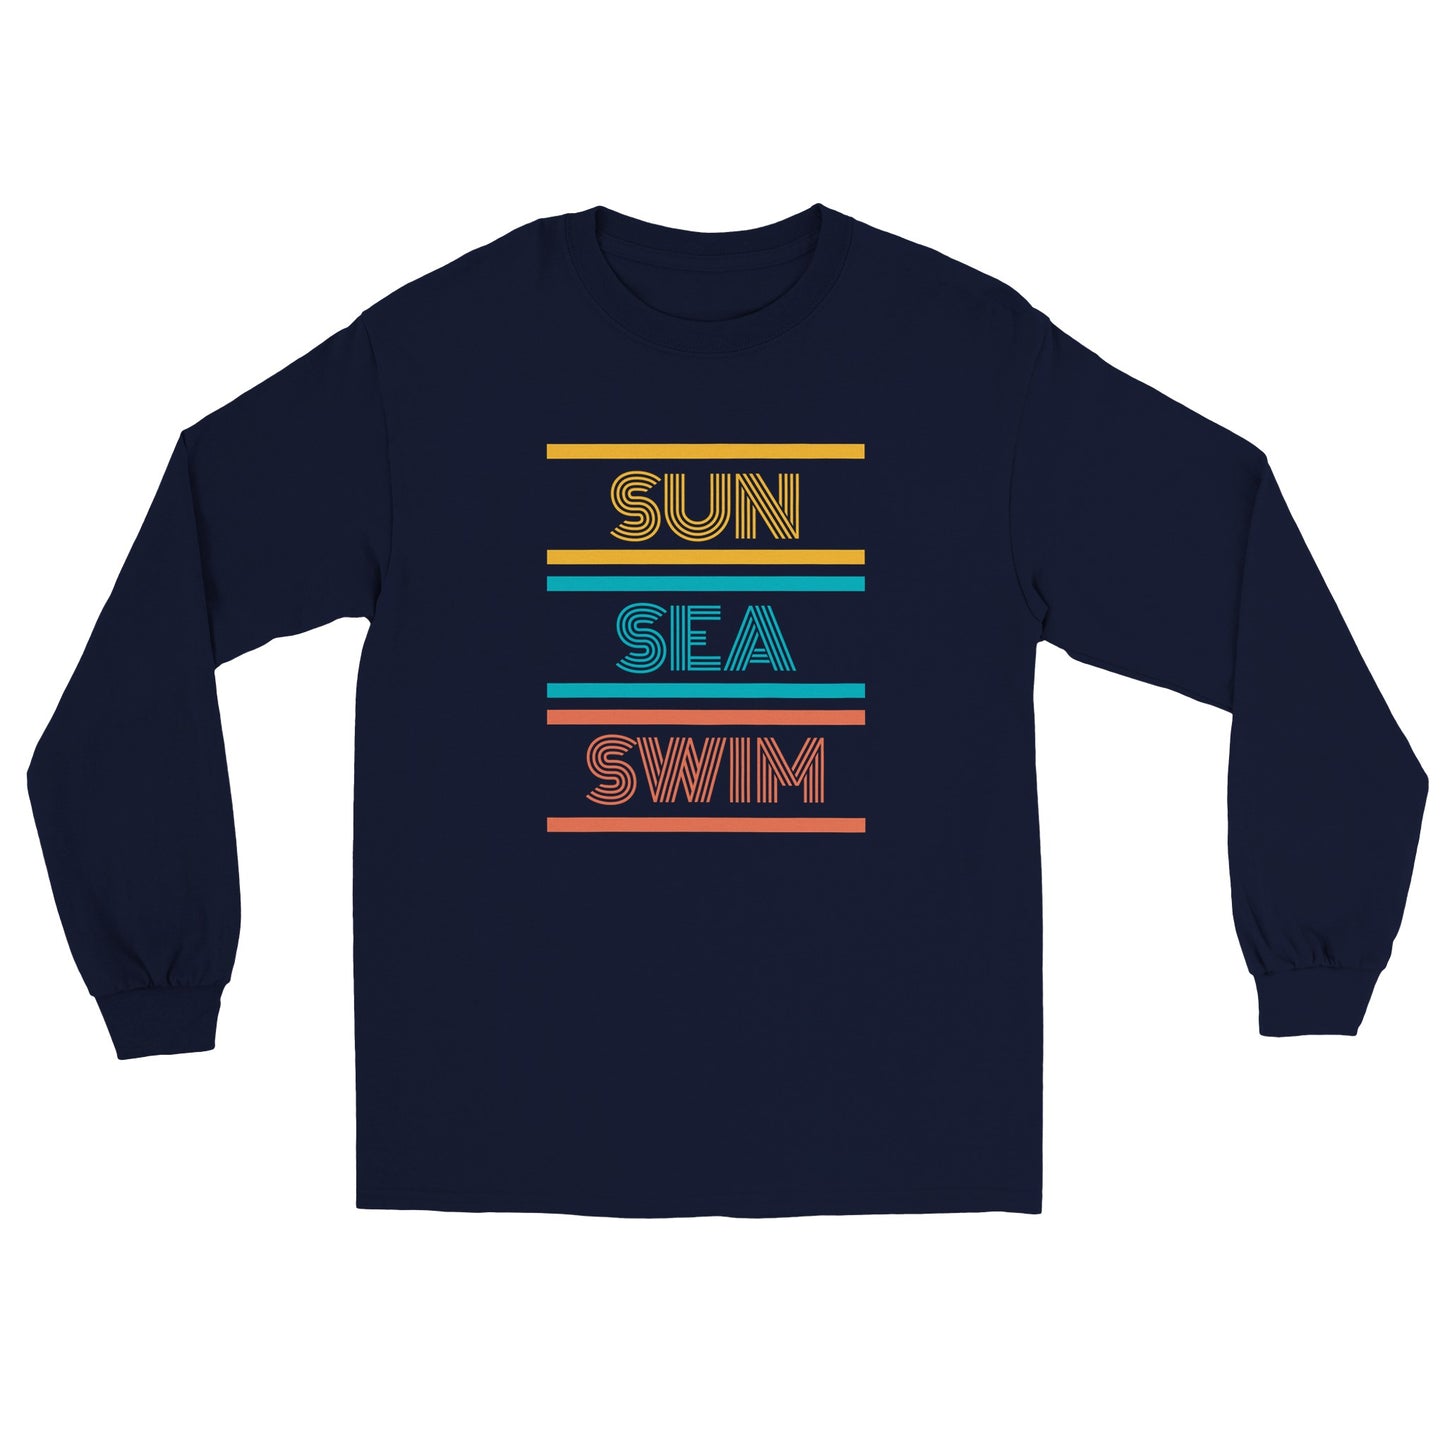 Sun Sea Swim: Longsleeves T-shirt